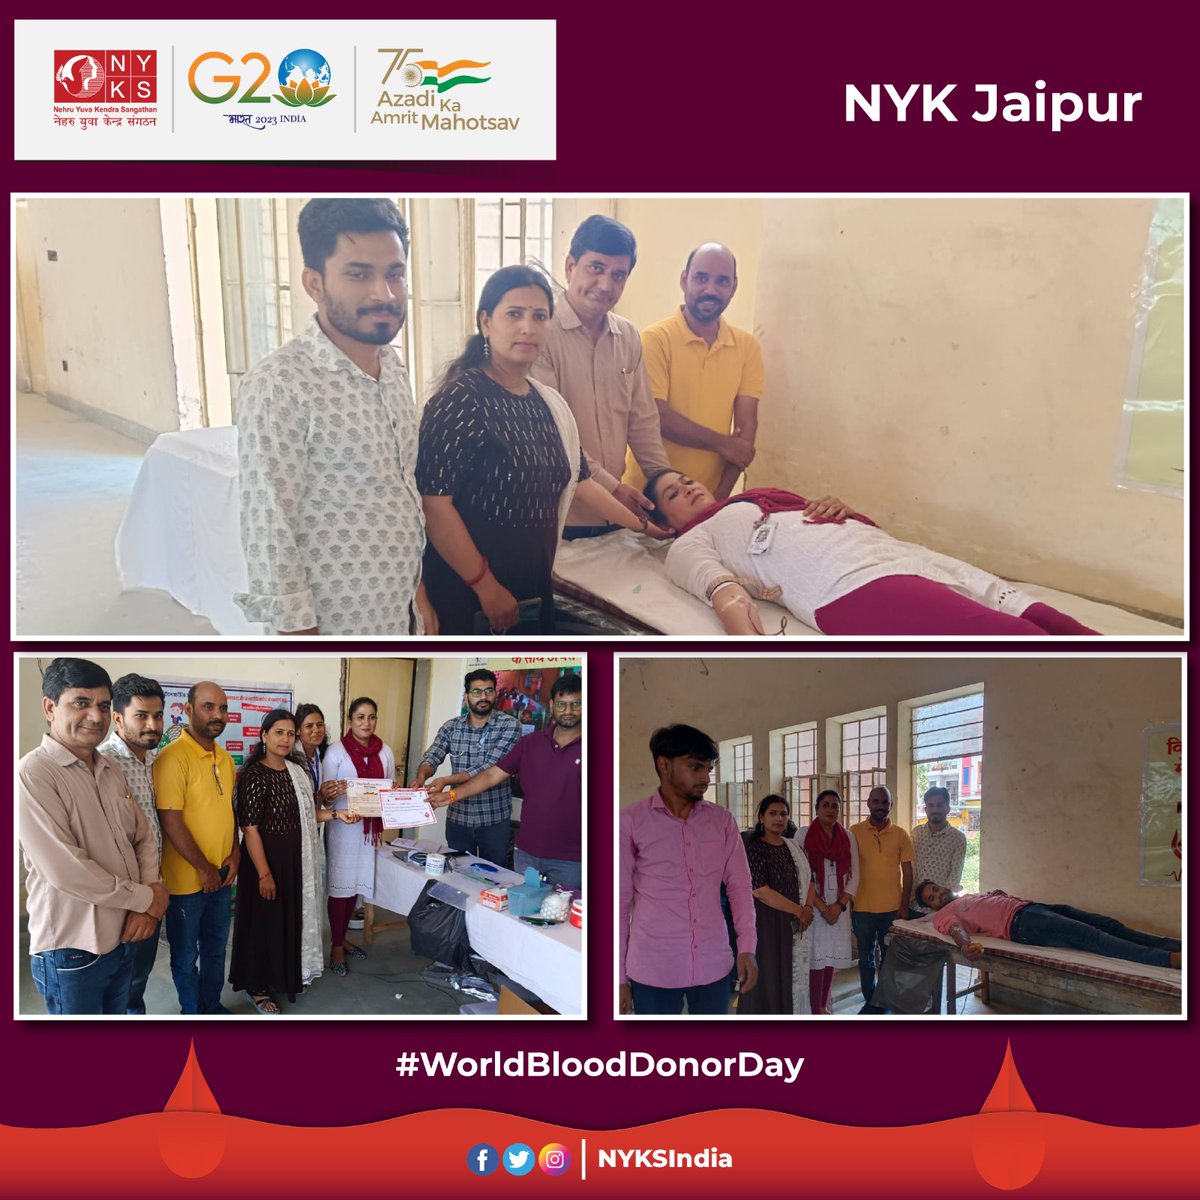 नेहरू युवा केंद्र जयपुर(@DycJaipur) से संबद्ध जानकी रक्षा फाउंडेशन एवं ग्राम चेतना केंद्र के संयुक्त तत्वावधान में #WorldBloodDonorDay  के उपलक्ष्य में मीना पालड़ी क्षेत्र के सामुदायिक भवन में निःशुल्क स्वास्थ्य शिविर व रक्तदान शिविर का आयोजन किया गया। 

 #BloodDonation #Jaipur